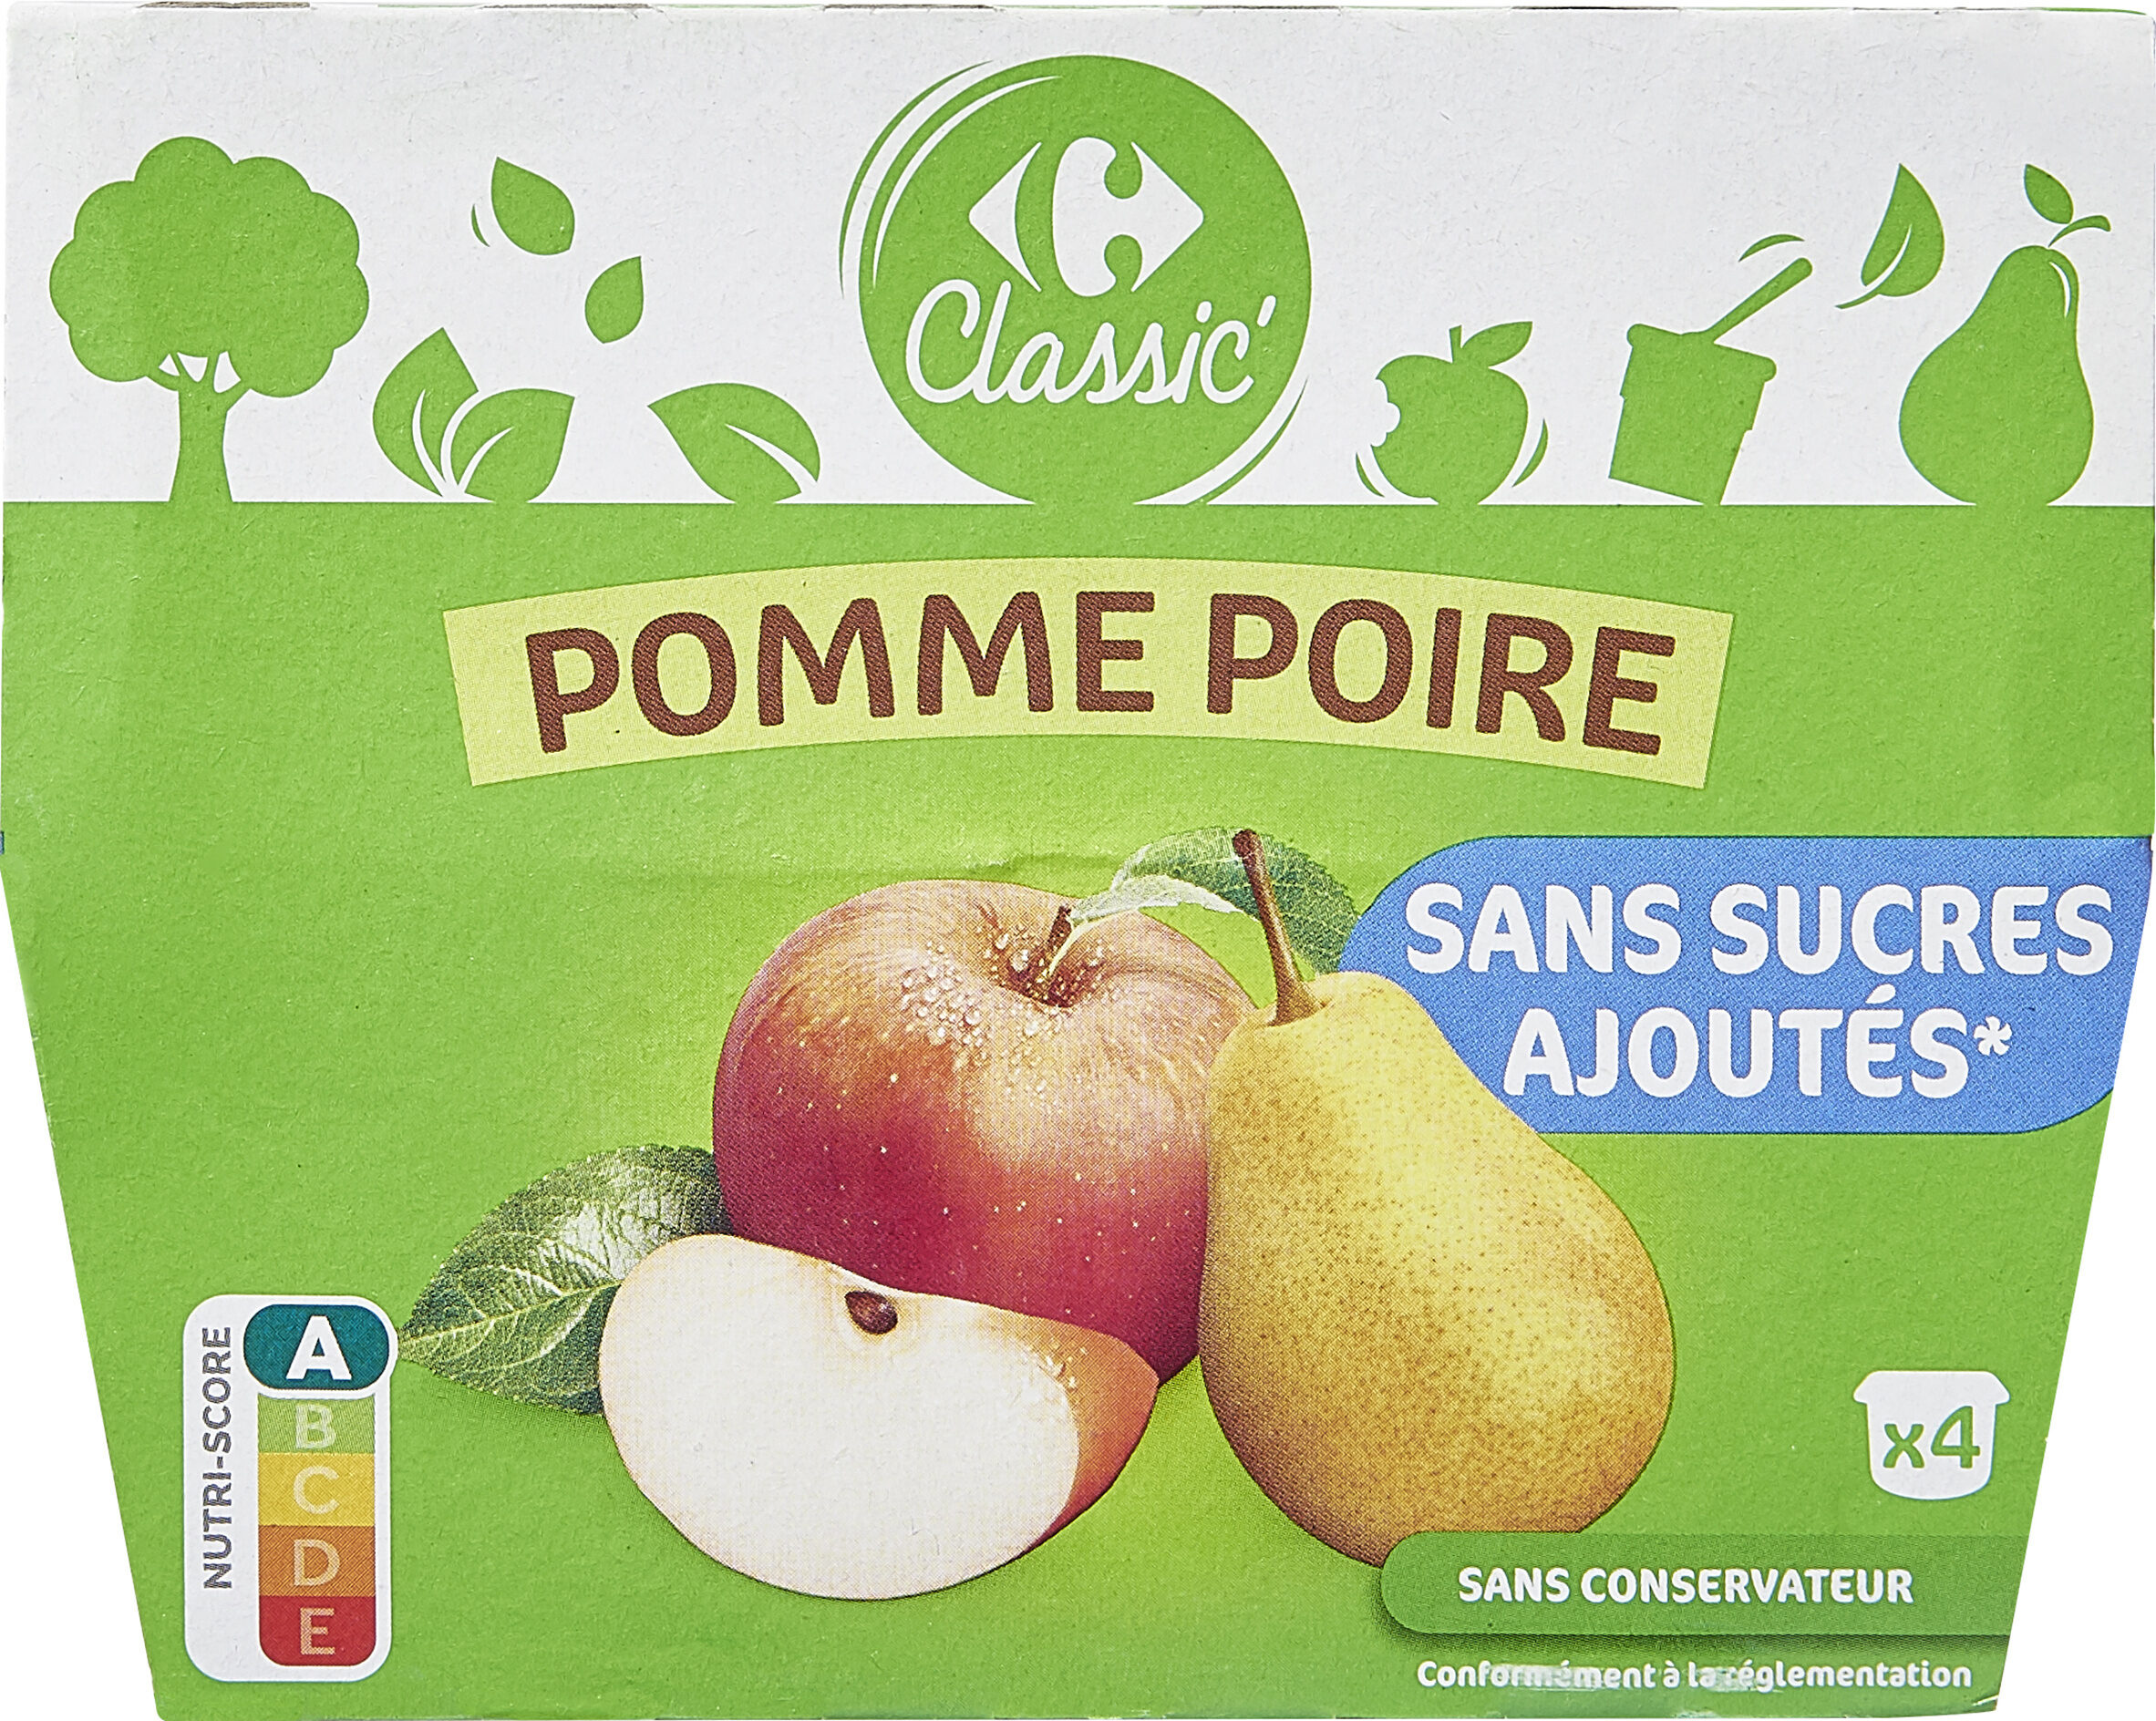 Pomme Poire Sans sucres ajoutés* - Produit - fr